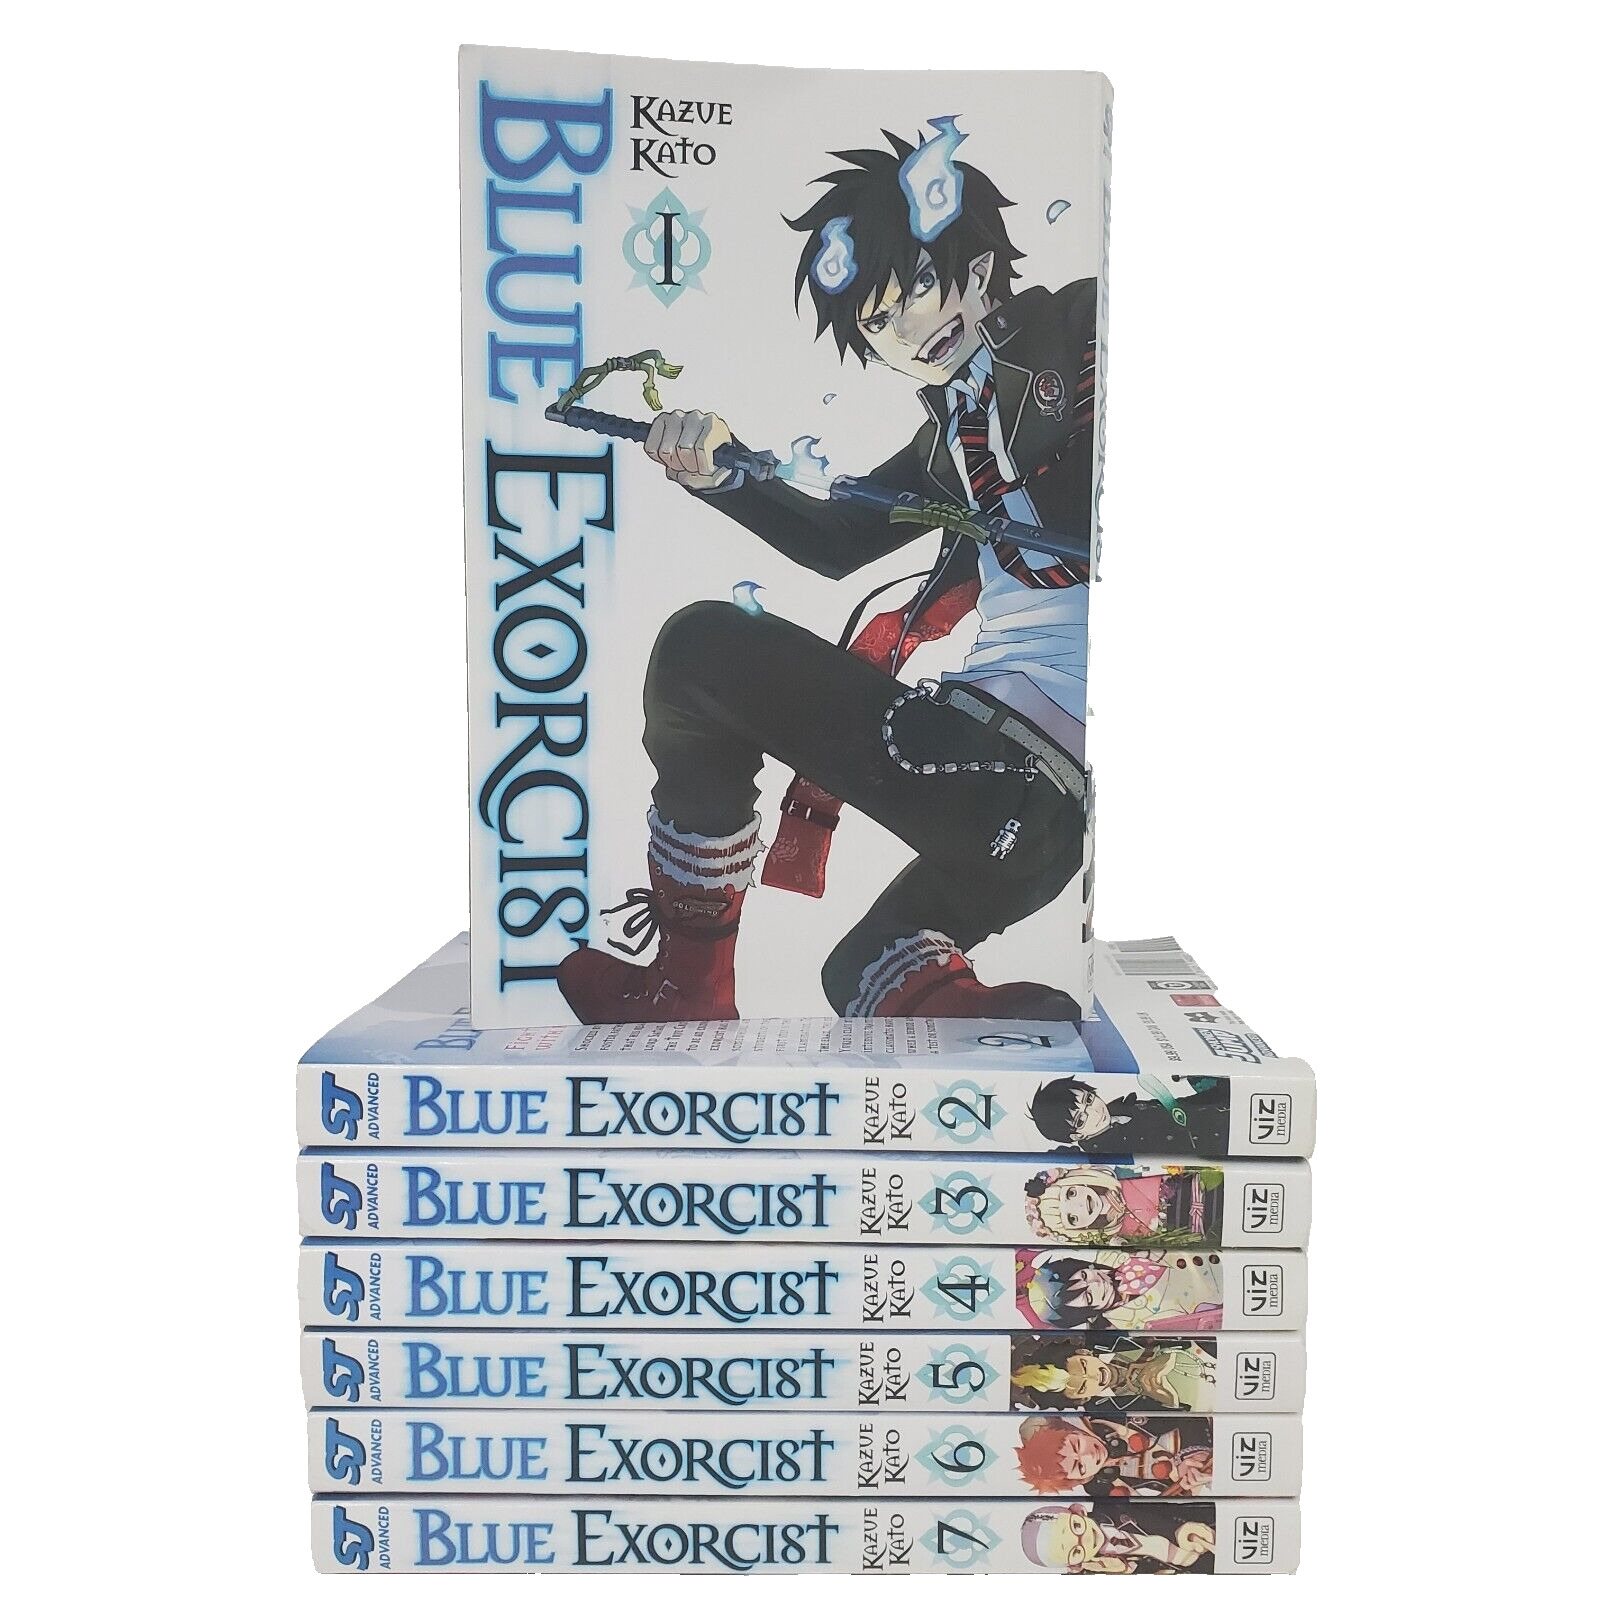 Kazue Kato Blue Exorcist VOL 1-7 Mature Manga Book Lot Viz Media ENGLISH Comic